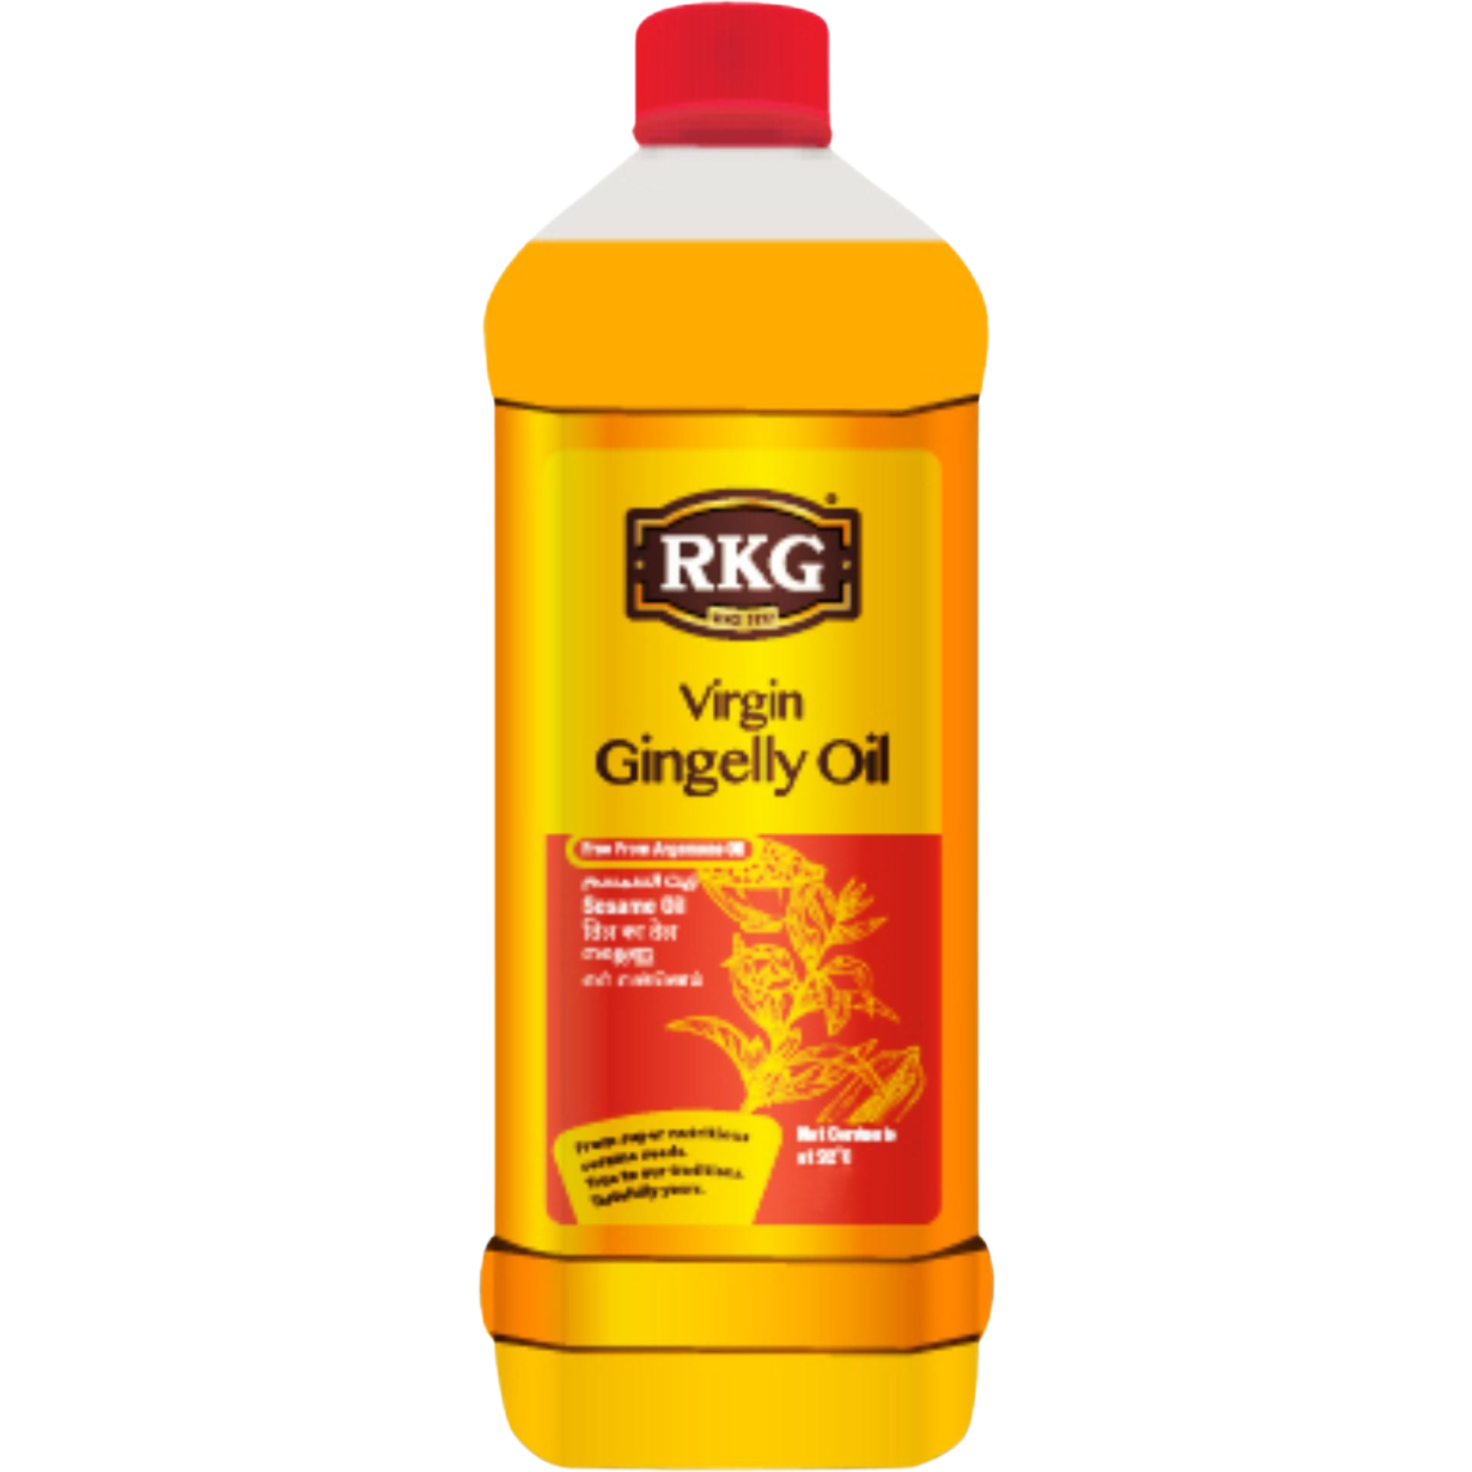 RKG Virgin Gingelly Sesame Oil - 1 L (33.8 Fl Oz)